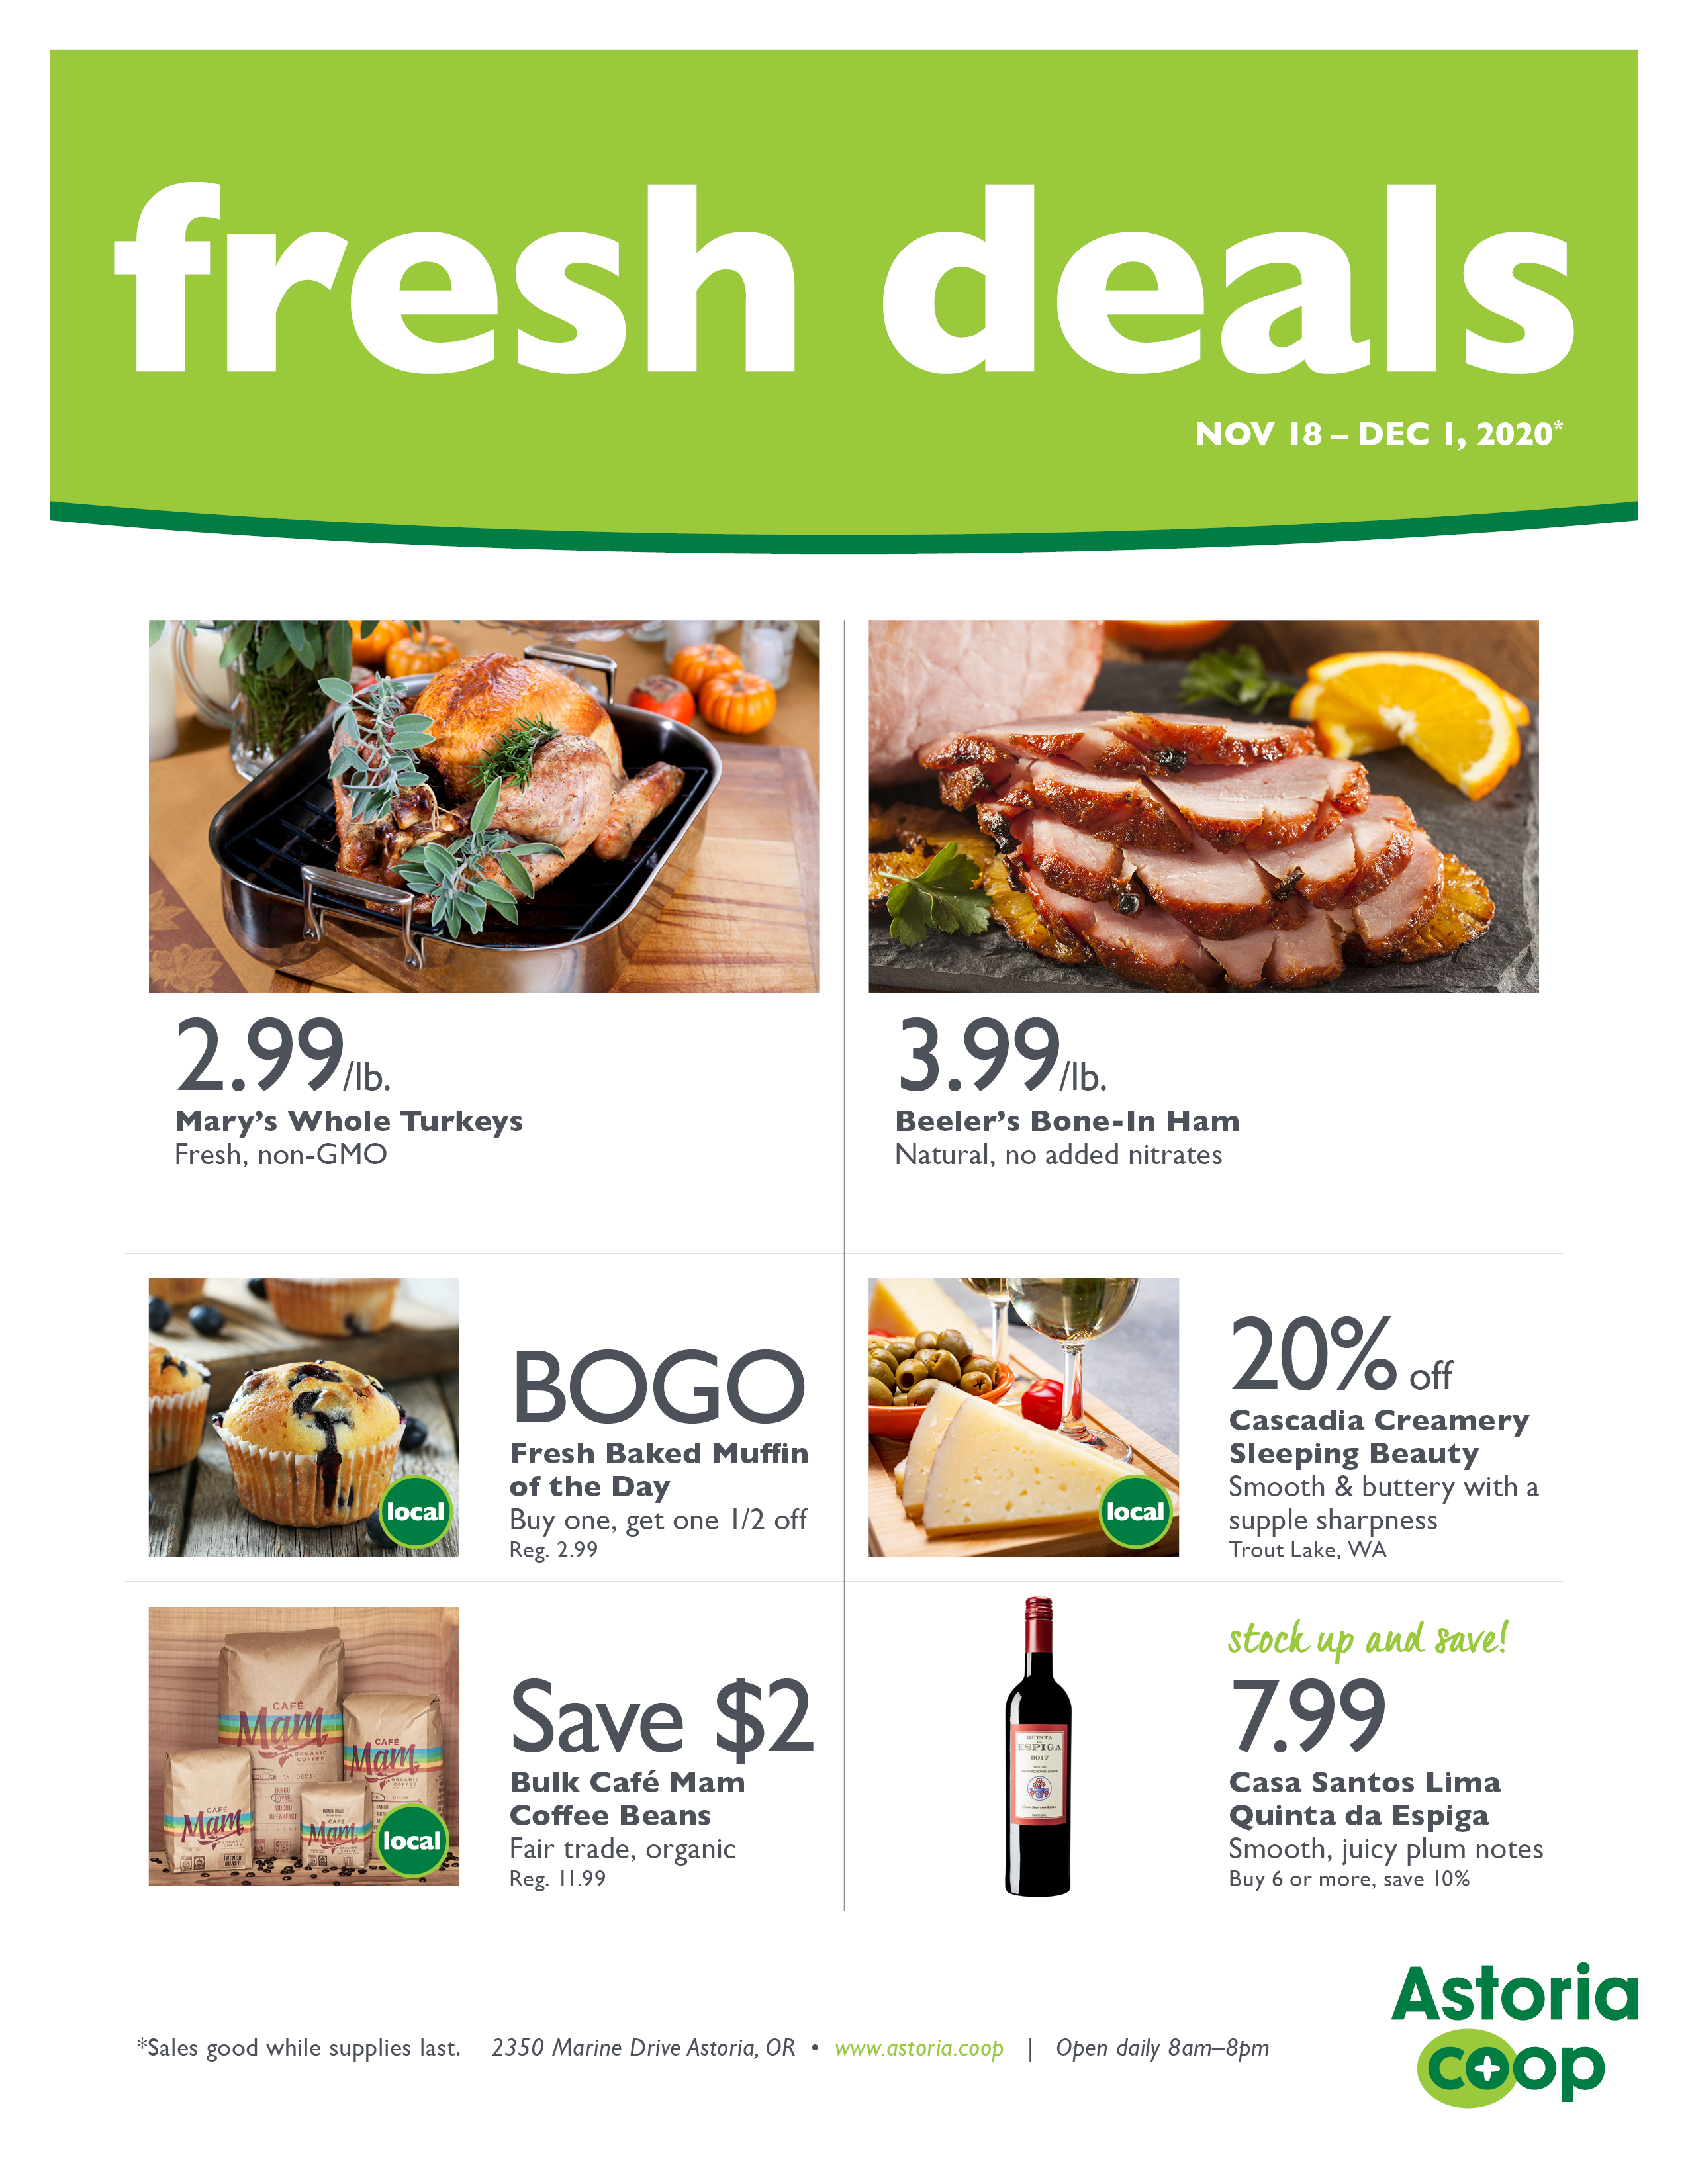 amazon fresh deals